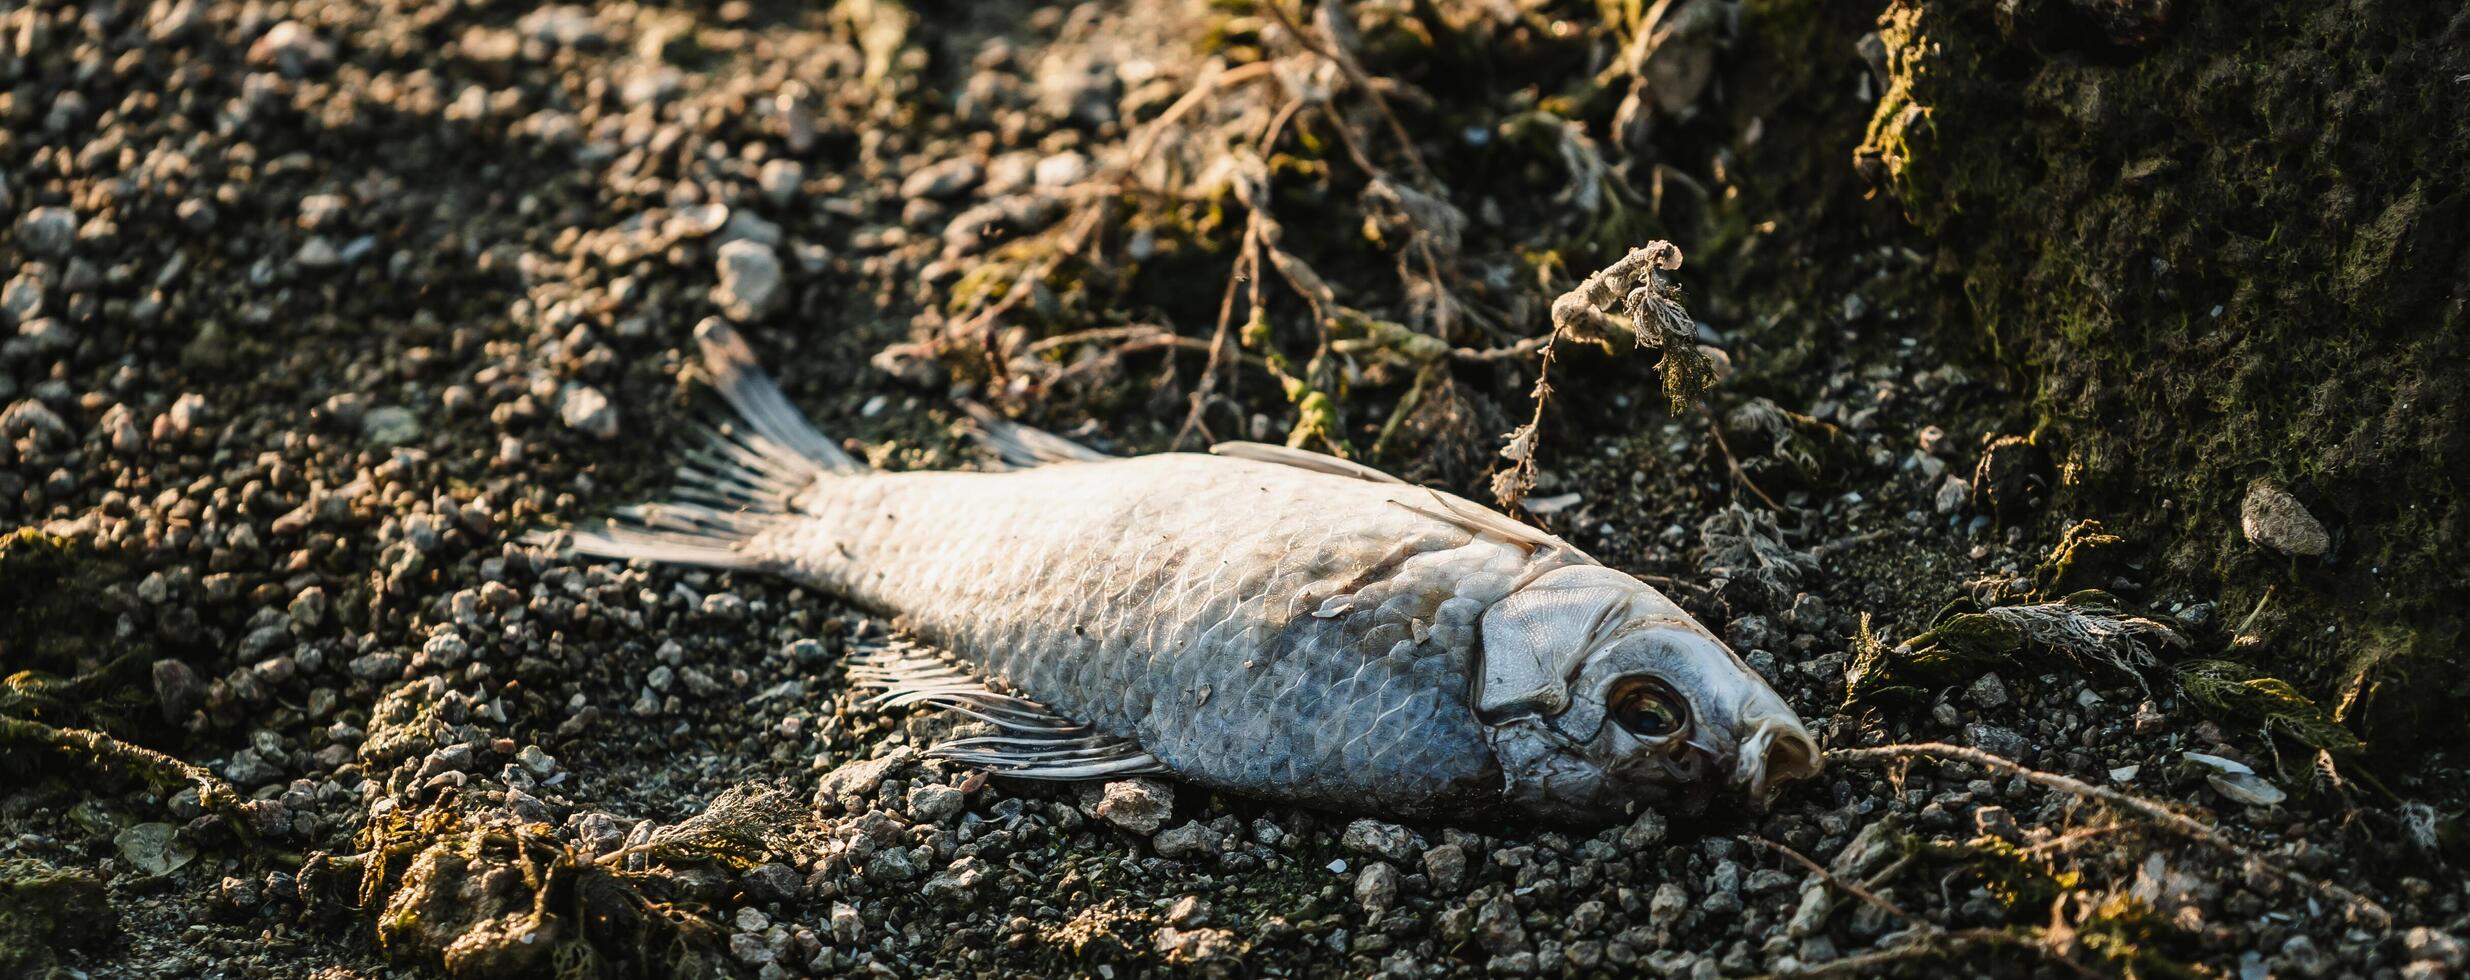 hinchado, muerto, envenenado pescado mentiras en el río banco. ambiental contaminación. el impacto de tóxico emisiones en el acuático ambiente foto